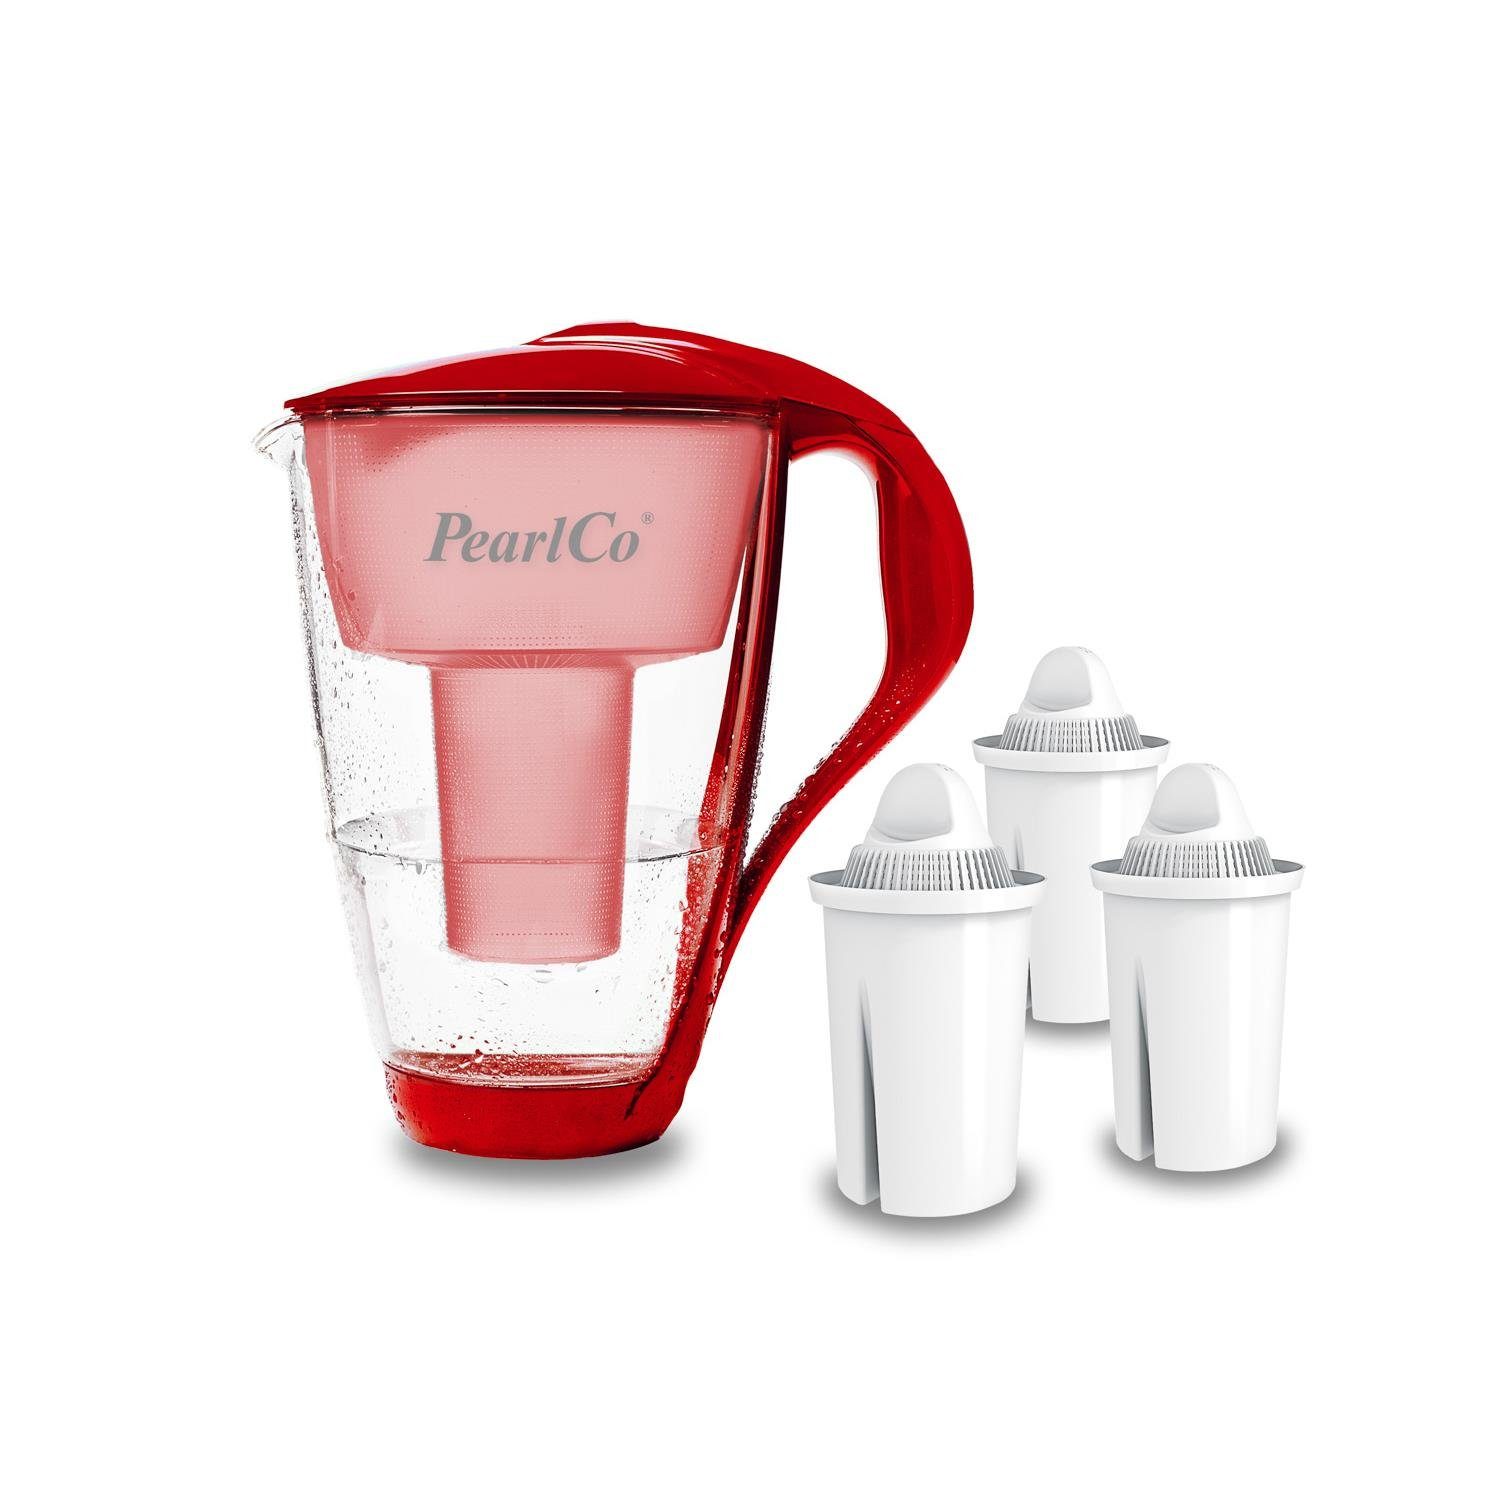 PearlCo Wasserfilter Glas Inkl. 3 Universal Filterkartuschen, Zubehör für Brita Classic u. PearlCo Classic